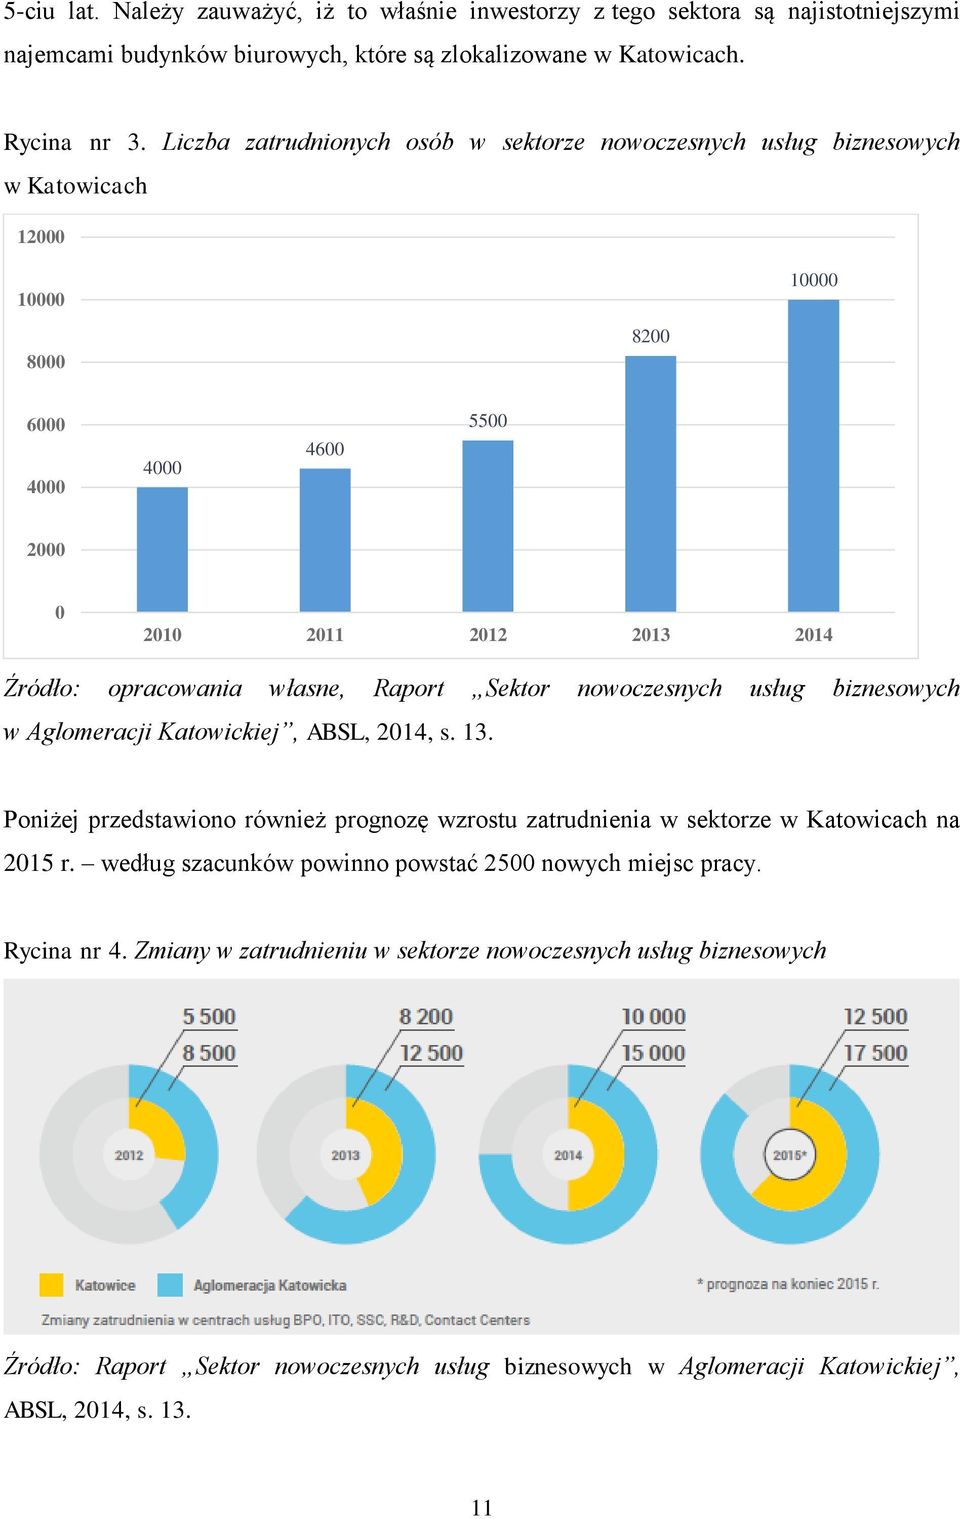 Raport Sektor nowoczesnych usług biznesowych w Aglomeracji Katowickiej, ABSL, 2014, s. 13. Poniżej przedstawiono również prognozę wzrostu zatrudnienia w sektorze w Katowicach na 2015 r.